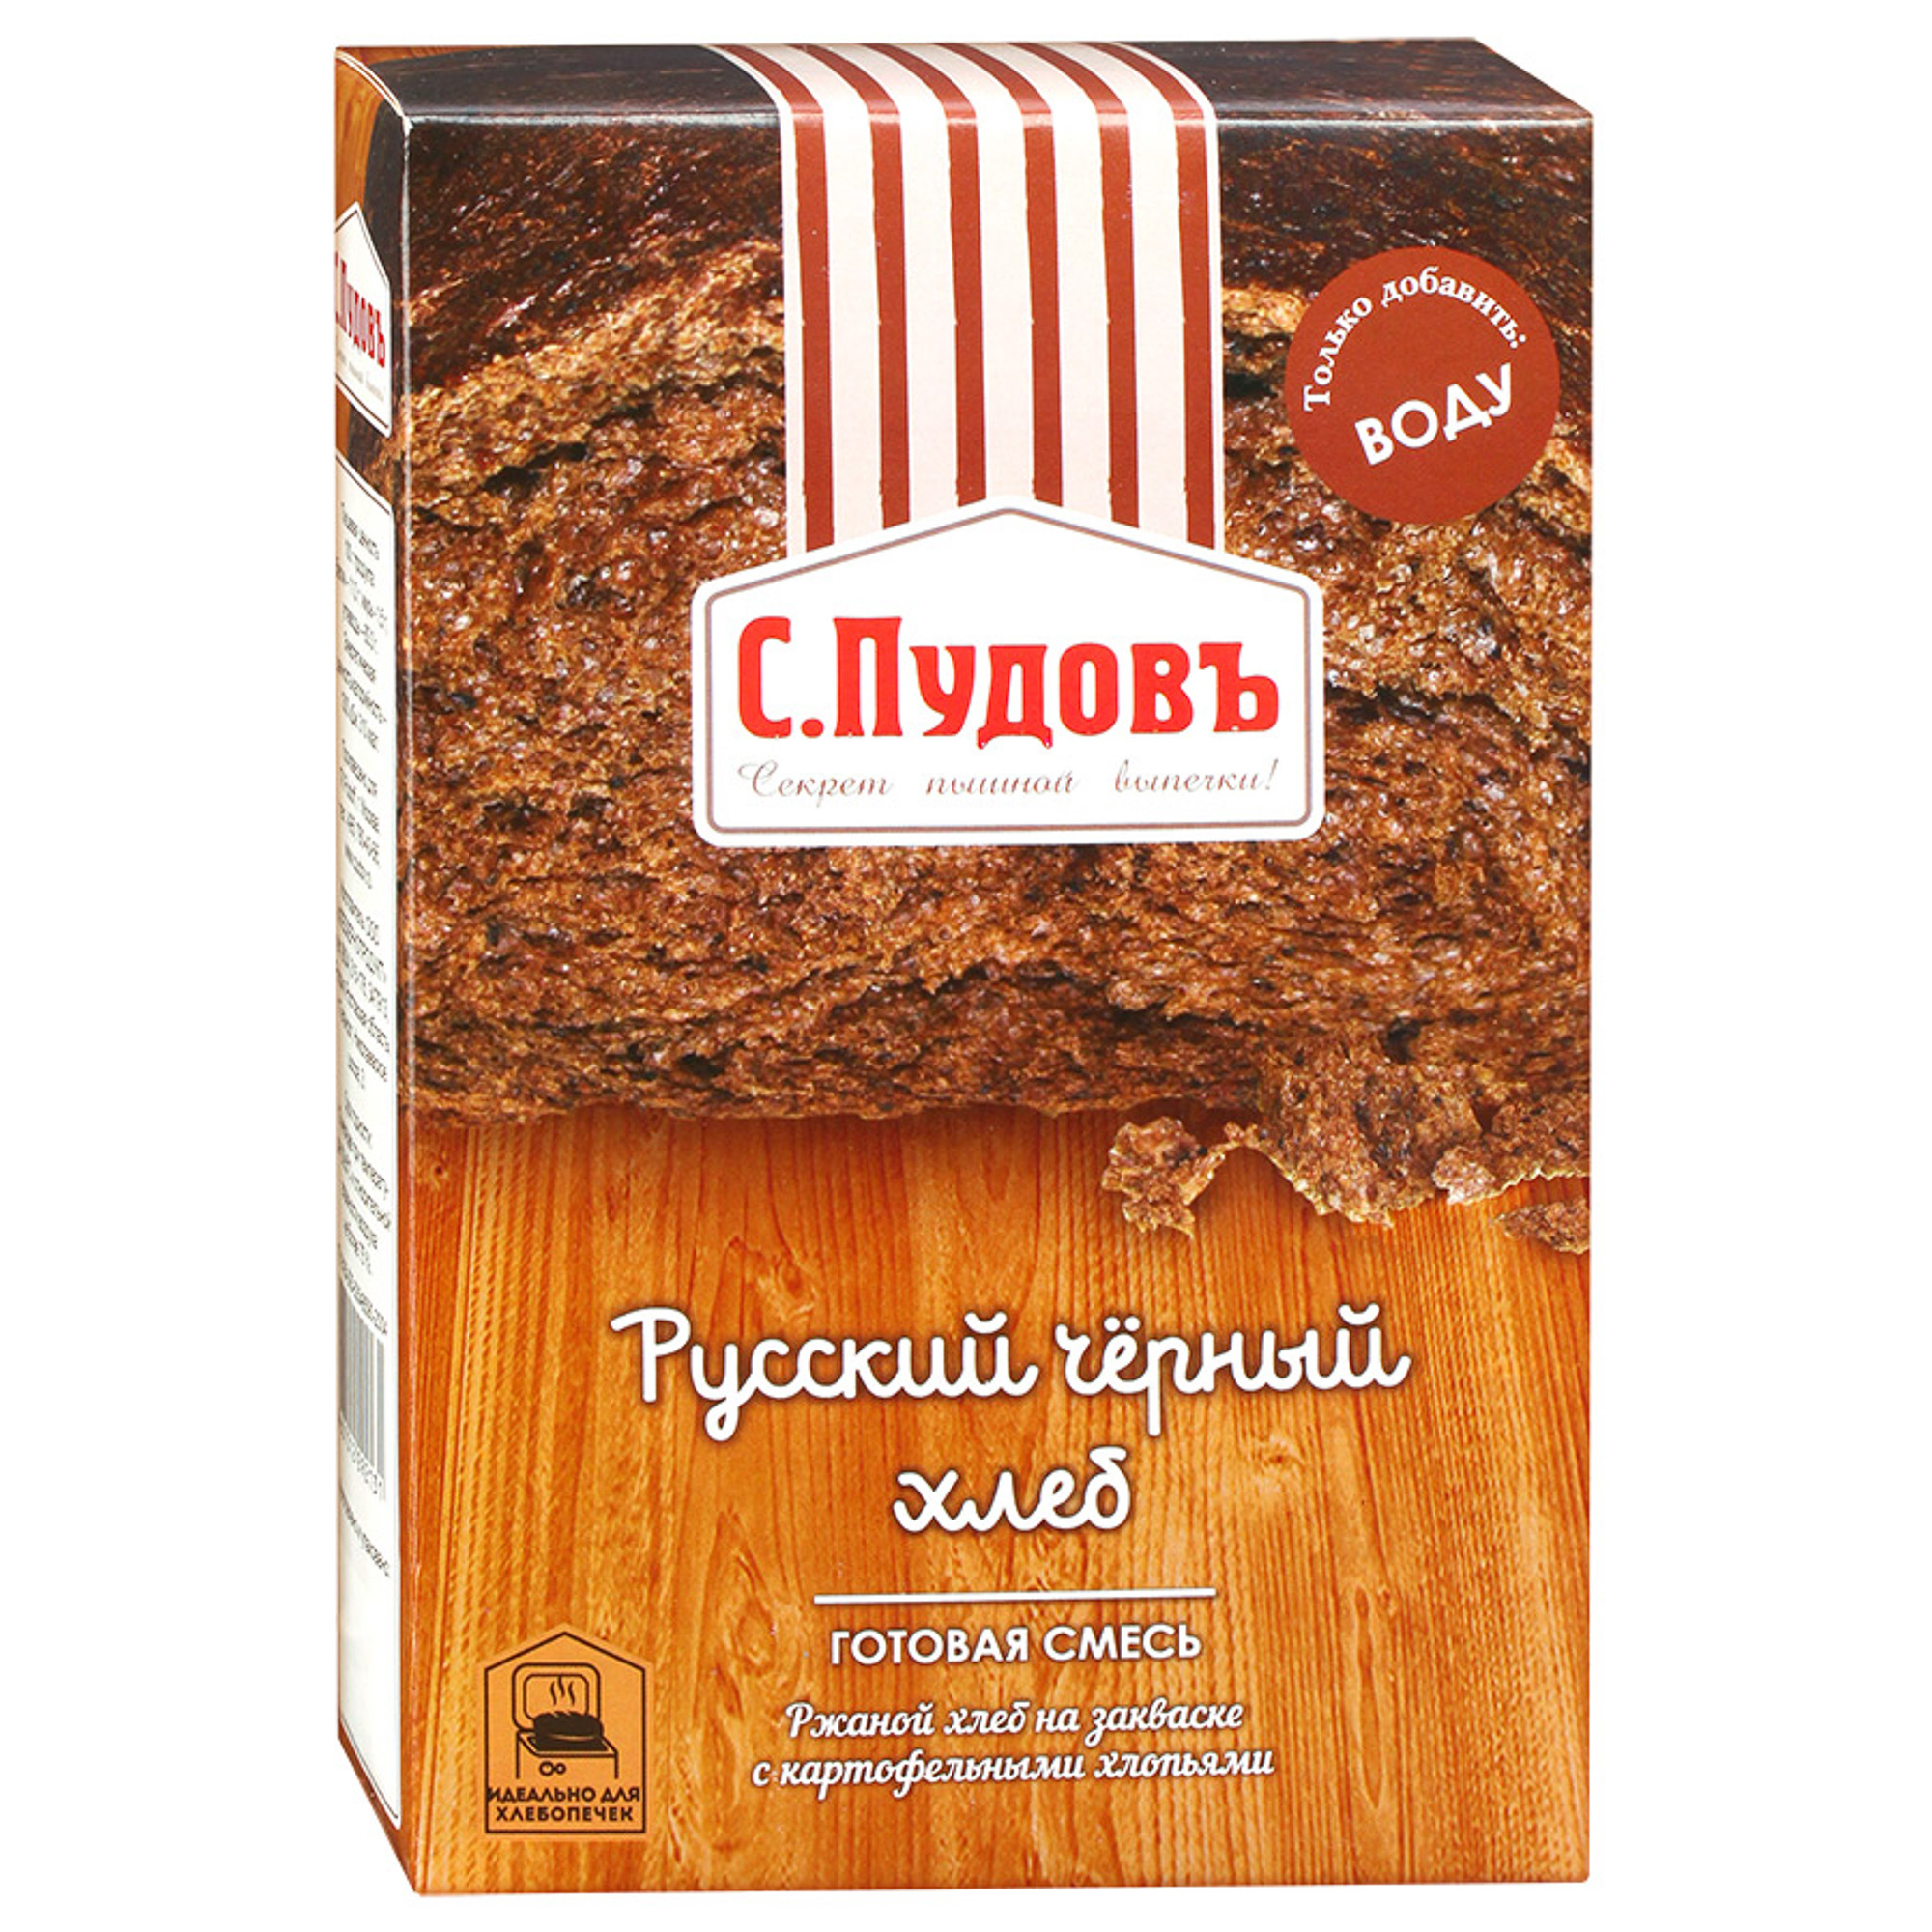 Хлебная смесь С.Пудовъ Русский черный хлеб 500 г смесь хлебная с пудовъ бородинский хлеб 500 г